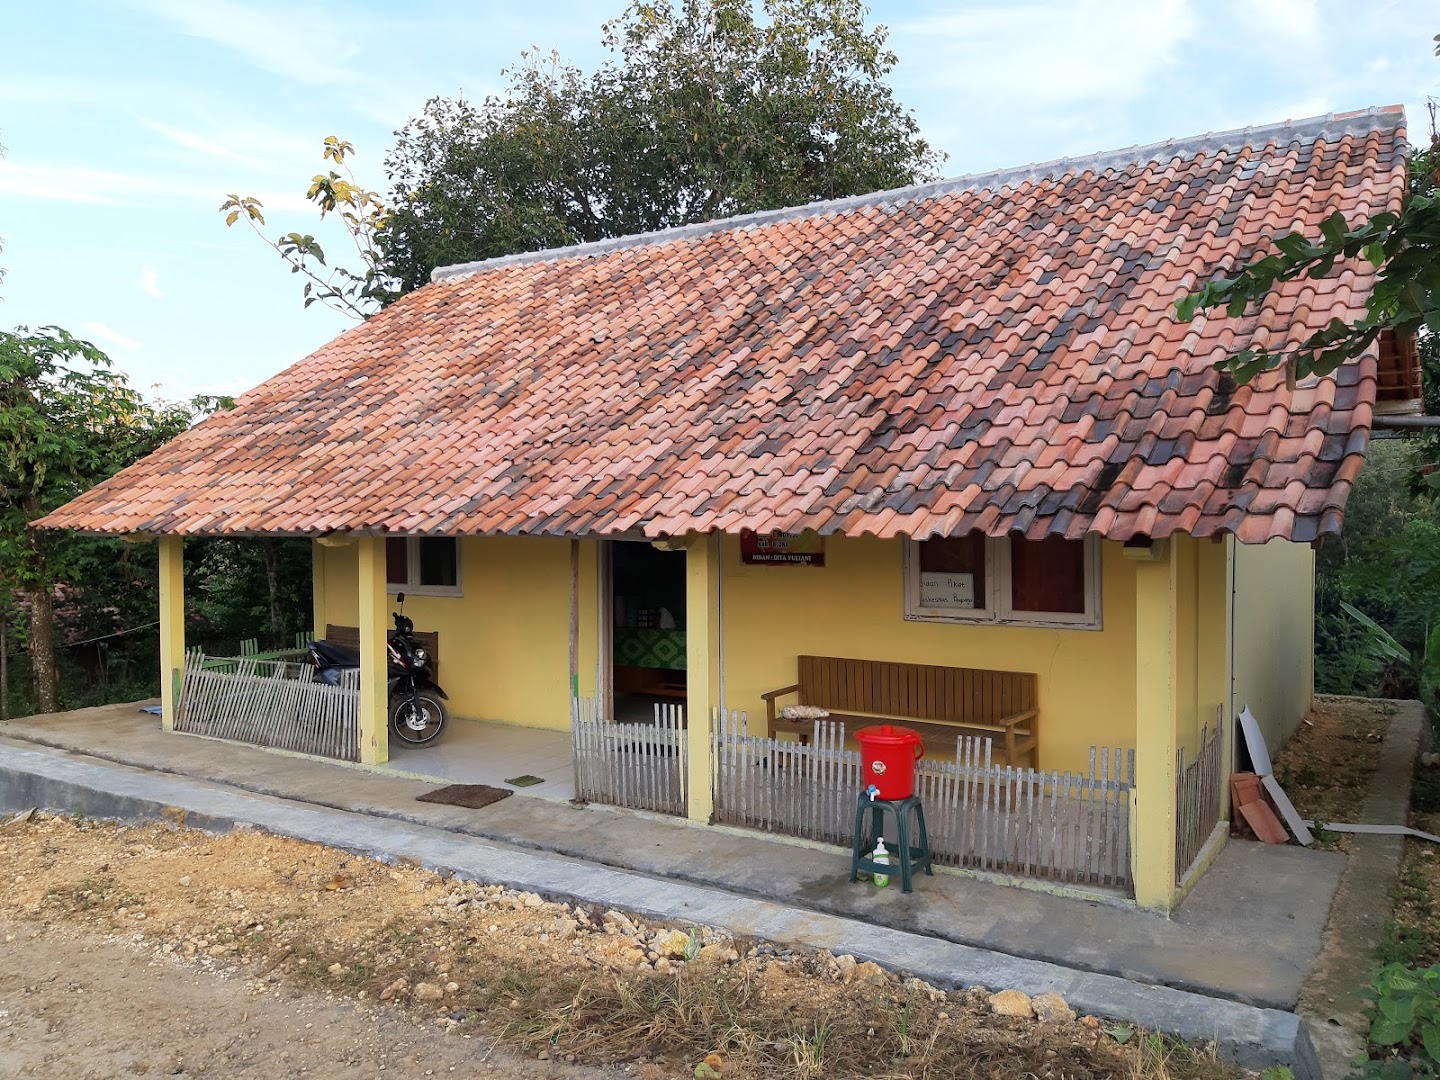 Poliklinik Kesehatan Desa Jurangjero Photo